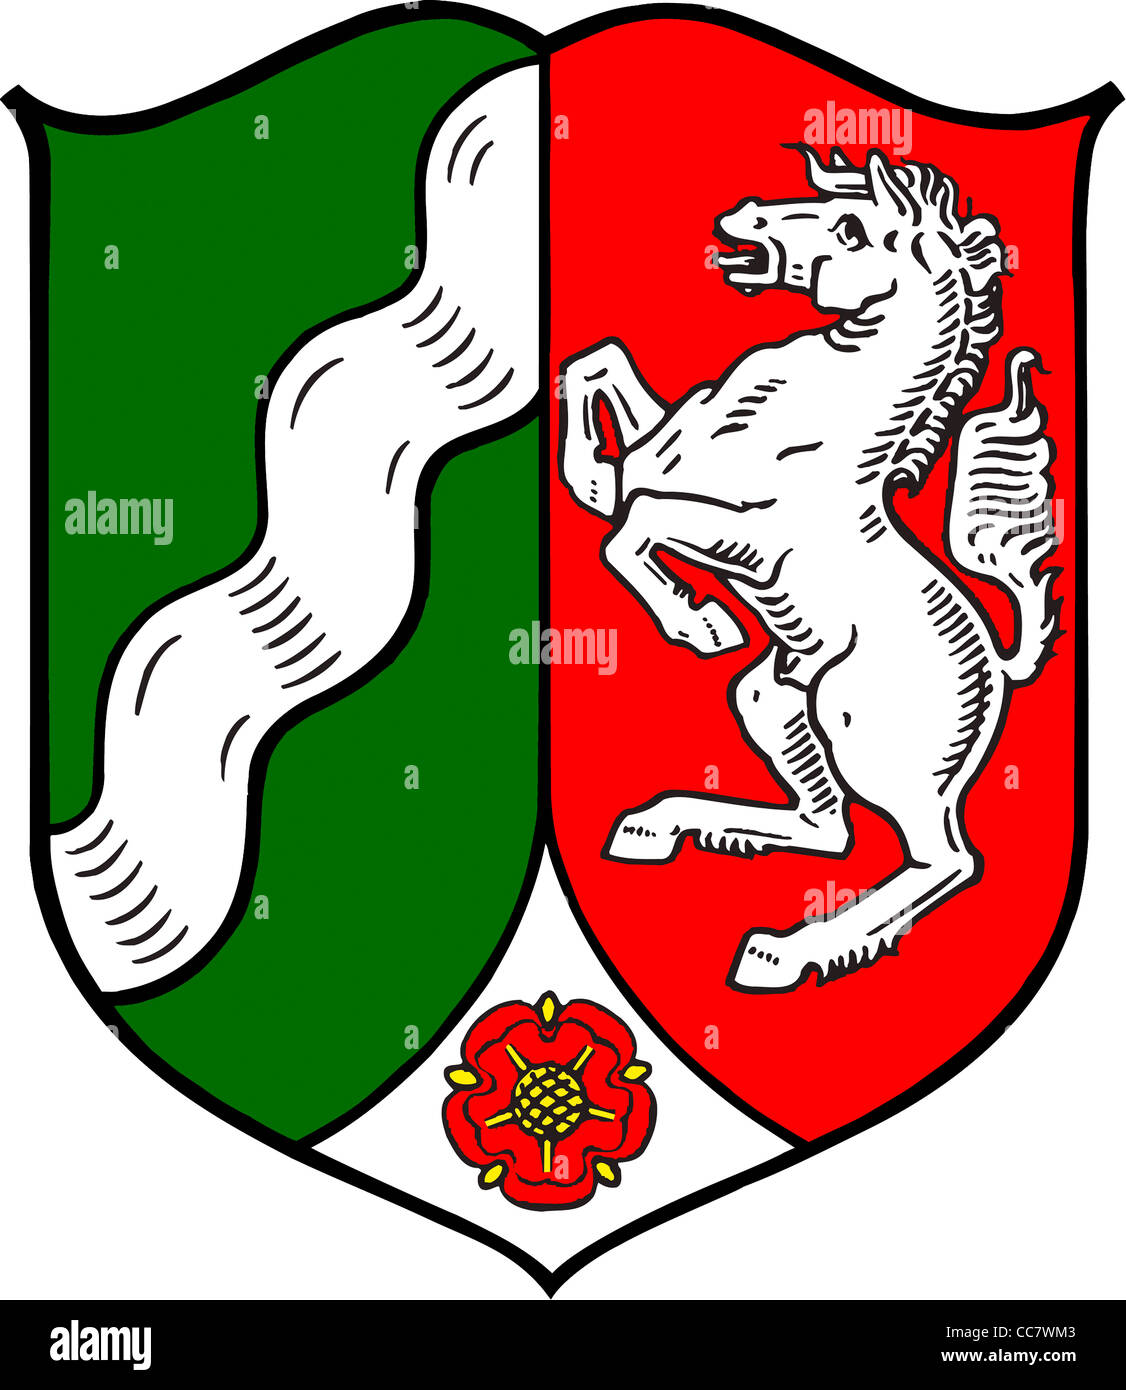 Escudo de armas del estado federal alemán de Renania del Norte-Westfalia. Foto de stock